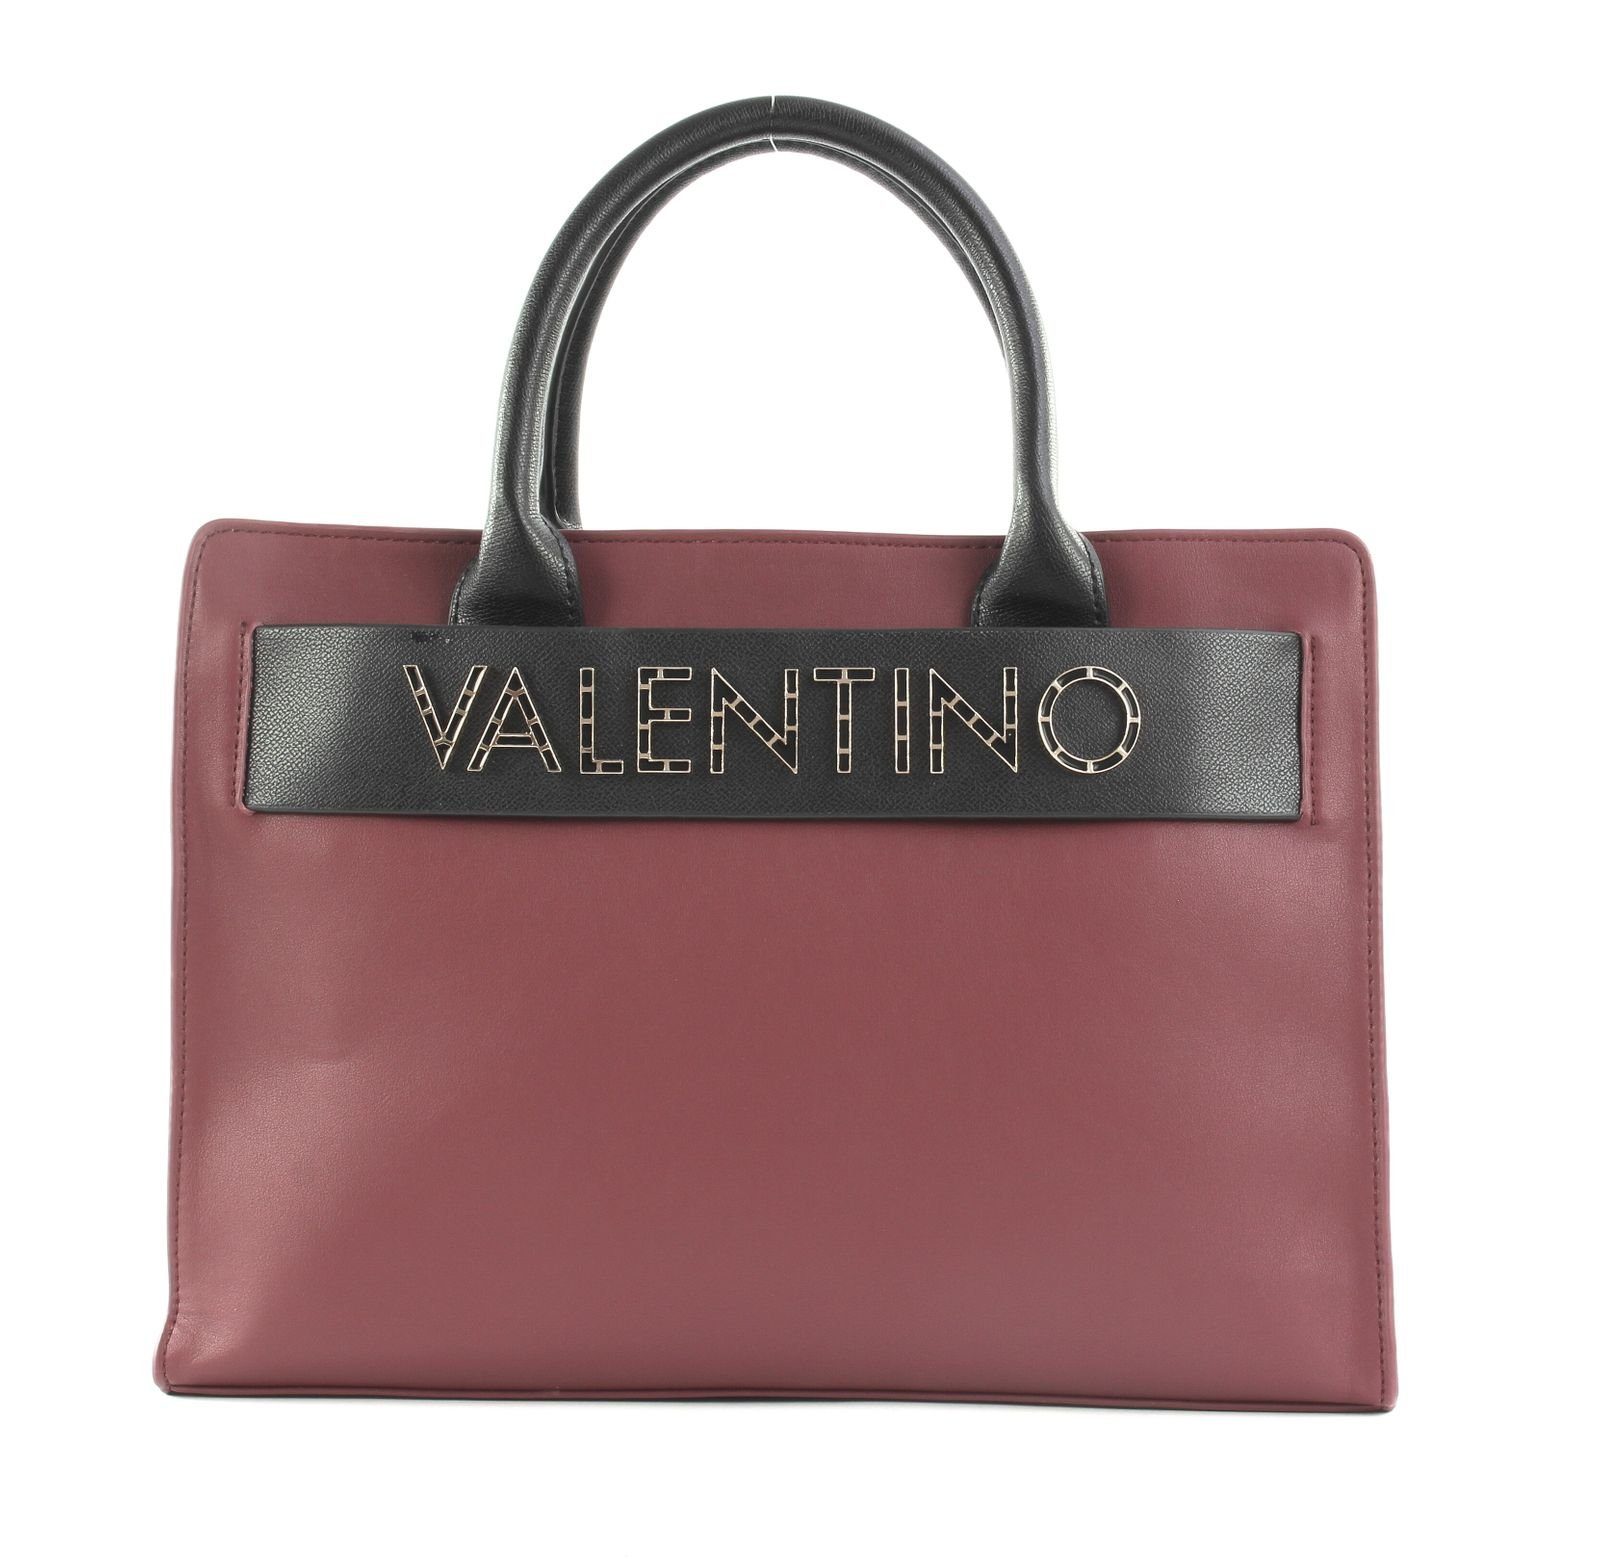 VALENTINO BAGS Handtasche Fisarmonica Prugn / Nero